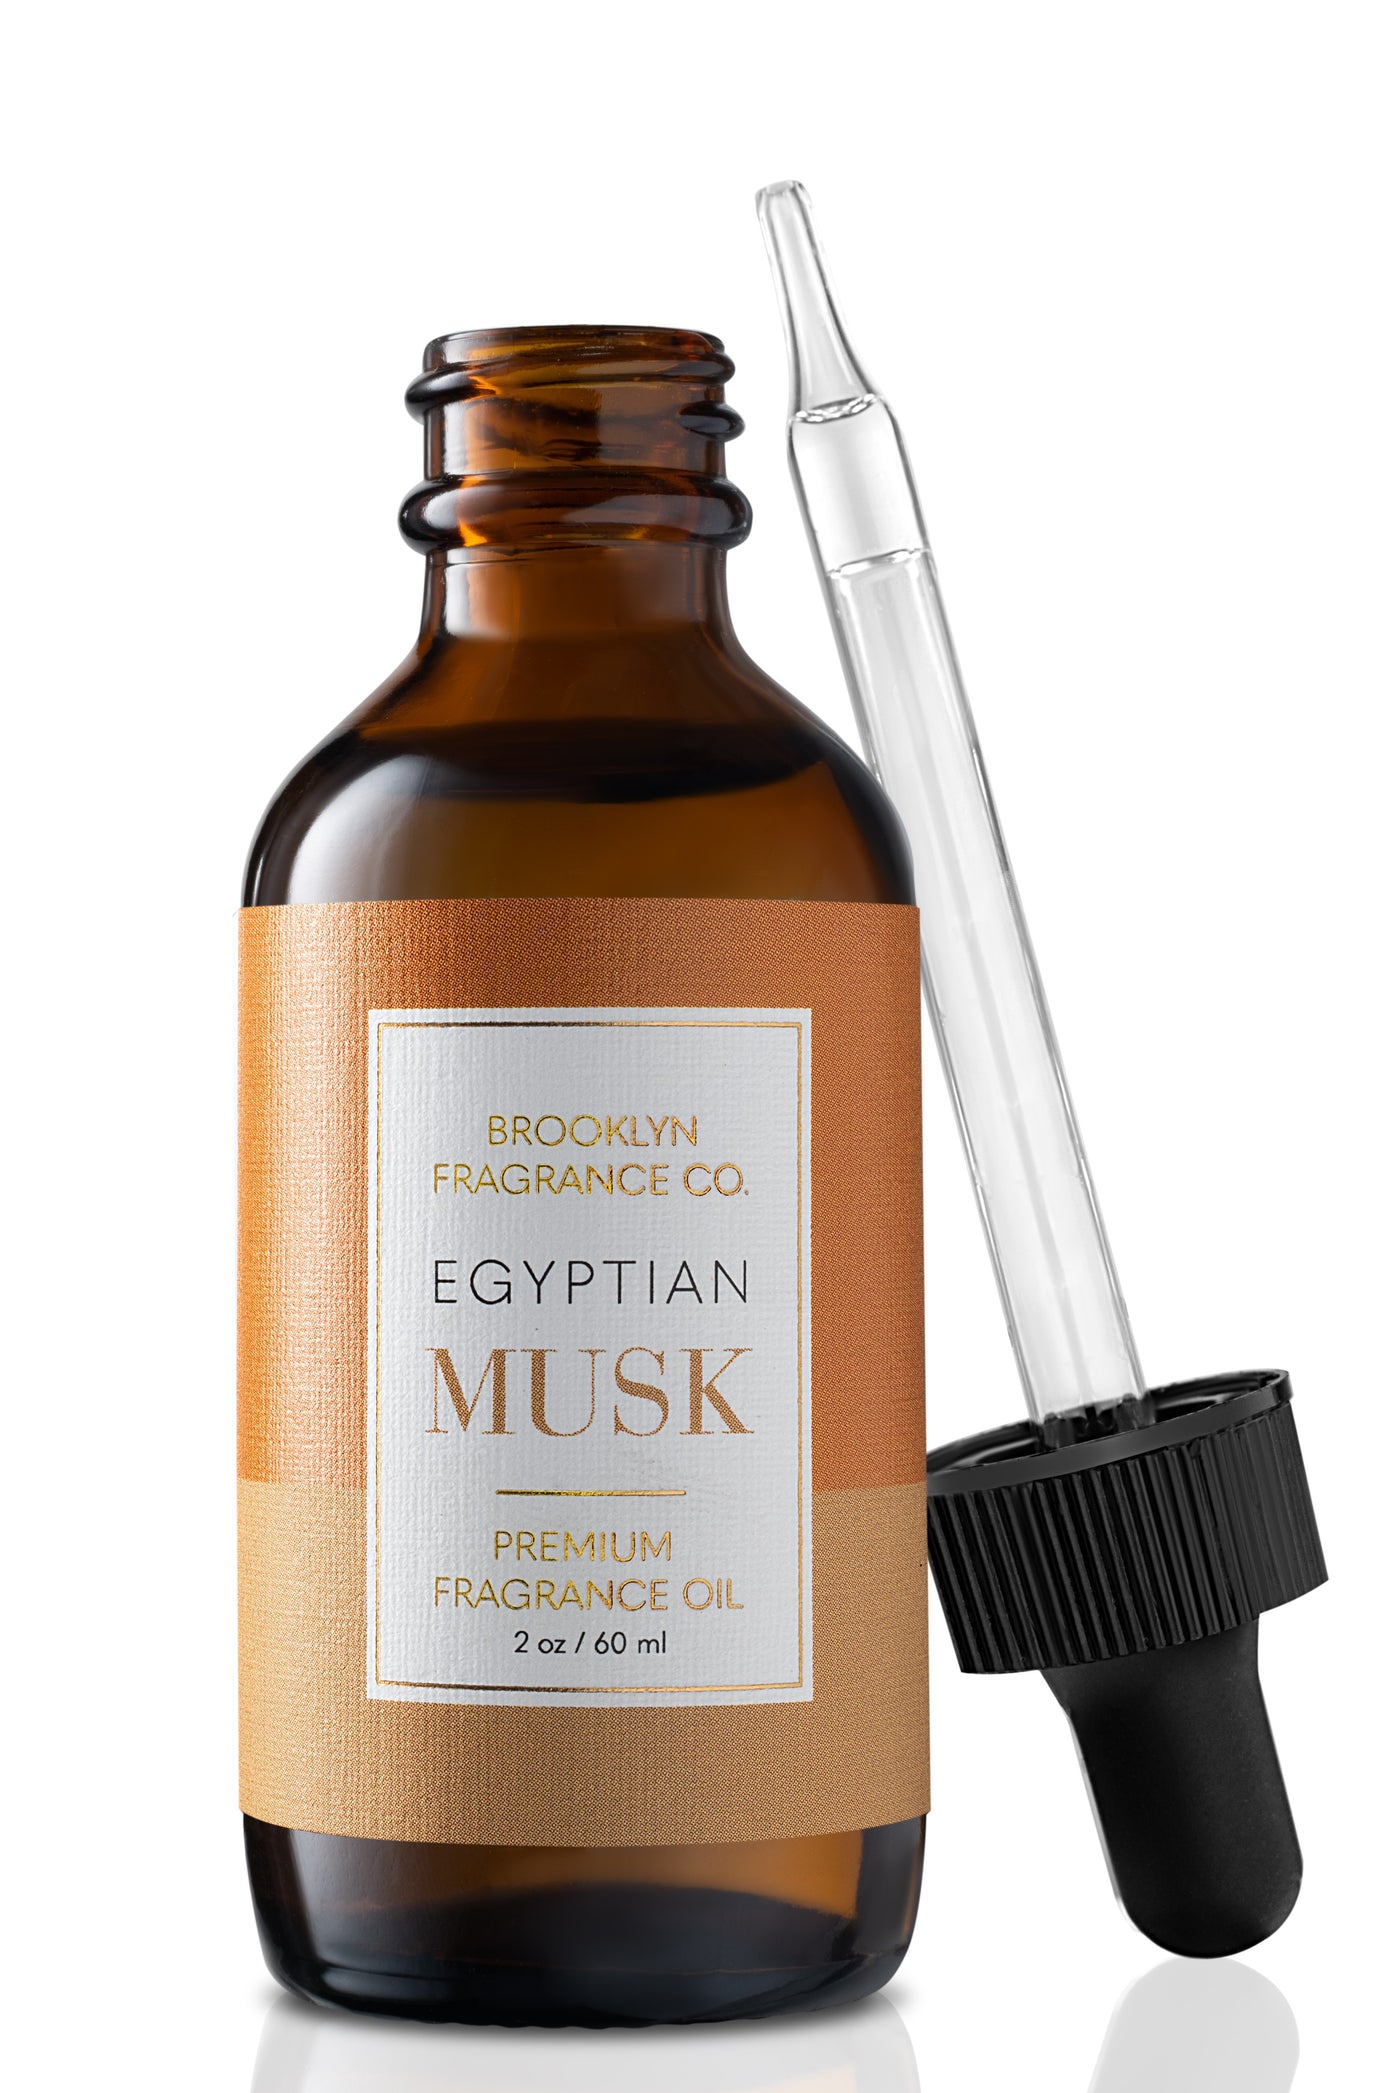 2 oz Premium Fragrance Oil - Egyptian Musk